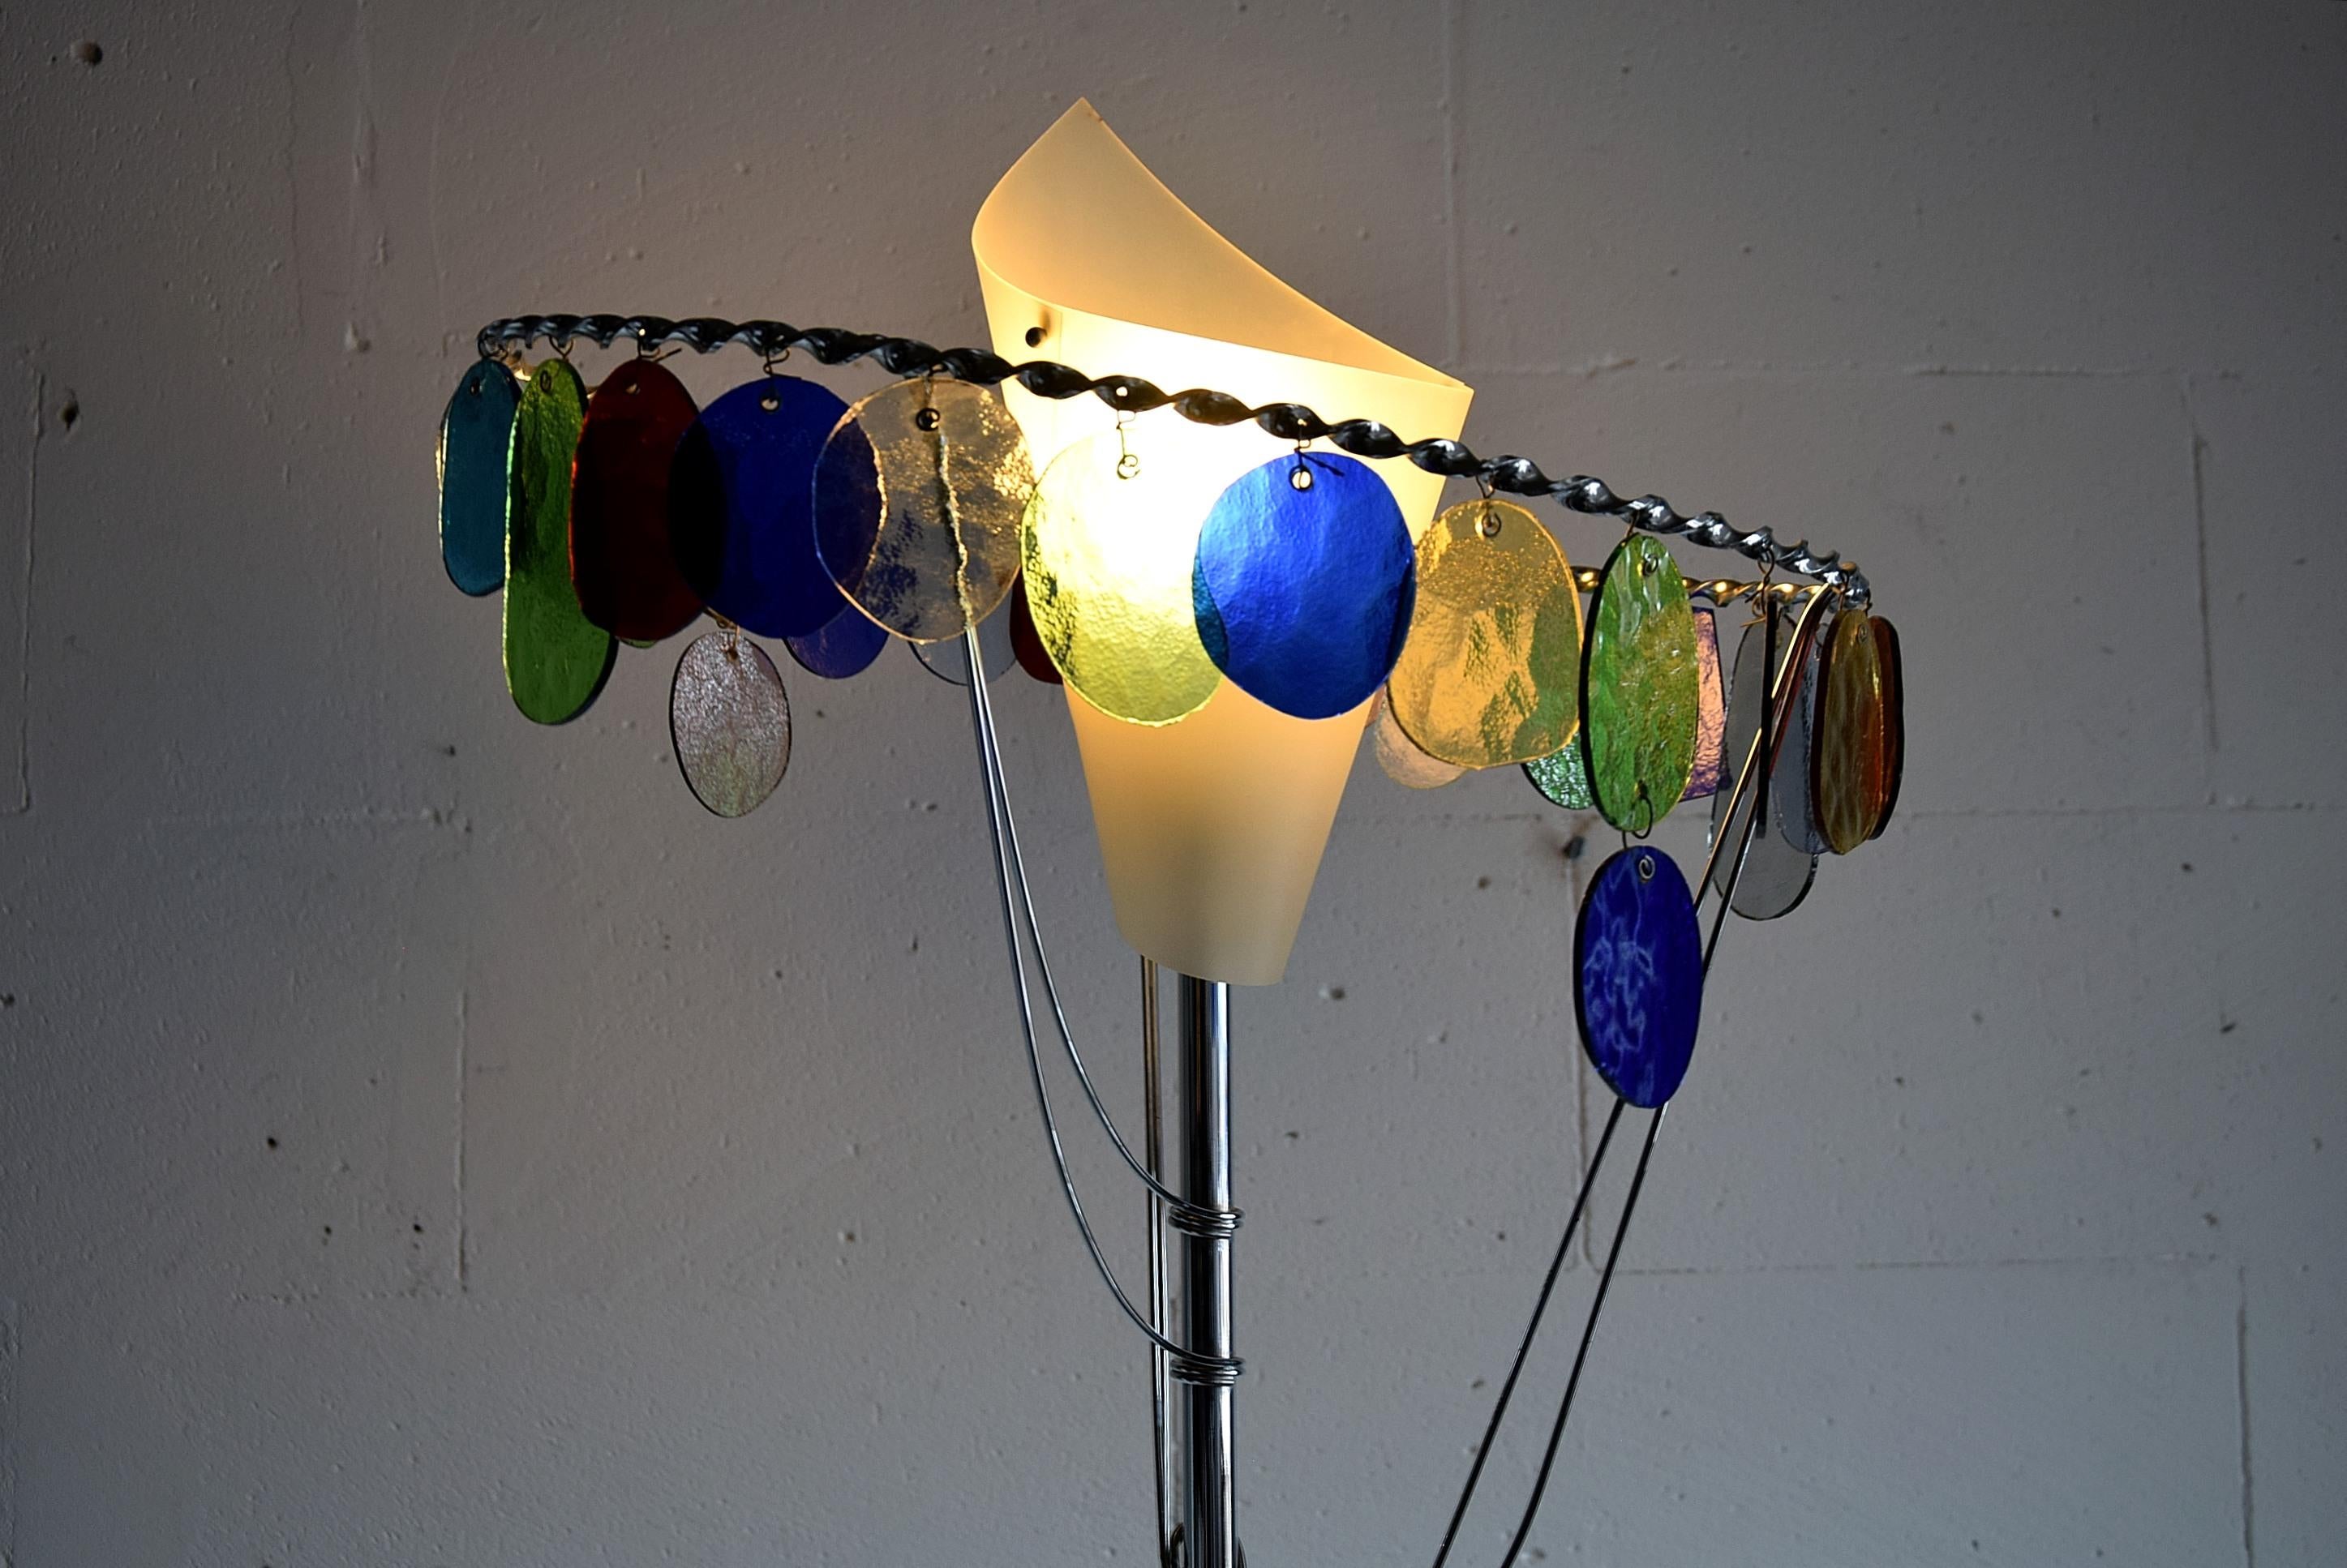 Lampe de table Artemide Sibari de Toni Cordero, 1990.
La lampe Sibari du designer italien Toni Cordero (1937-2001) appartient à la série des sculptures lumineuses de Milano Torino telles que l'Ecate ou l'Anchise produites en petit nombre en